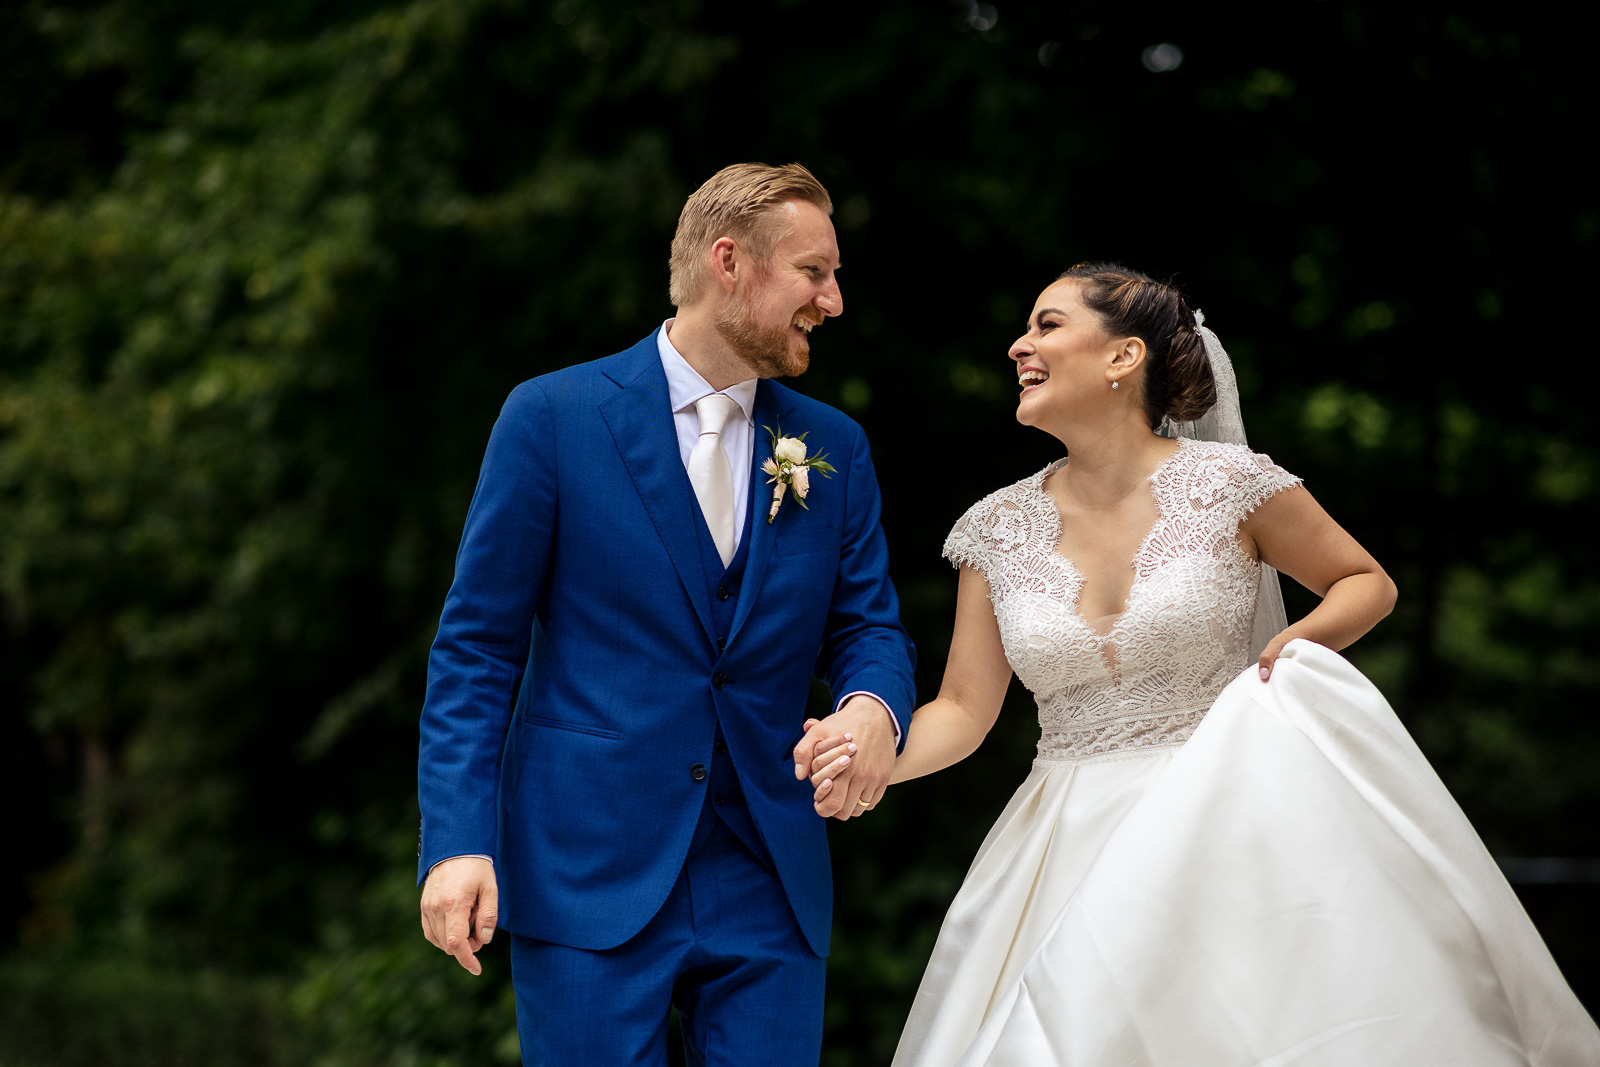 Plezier maken tijds de trouw fotoshoot door trouwfotograaf Den Haag